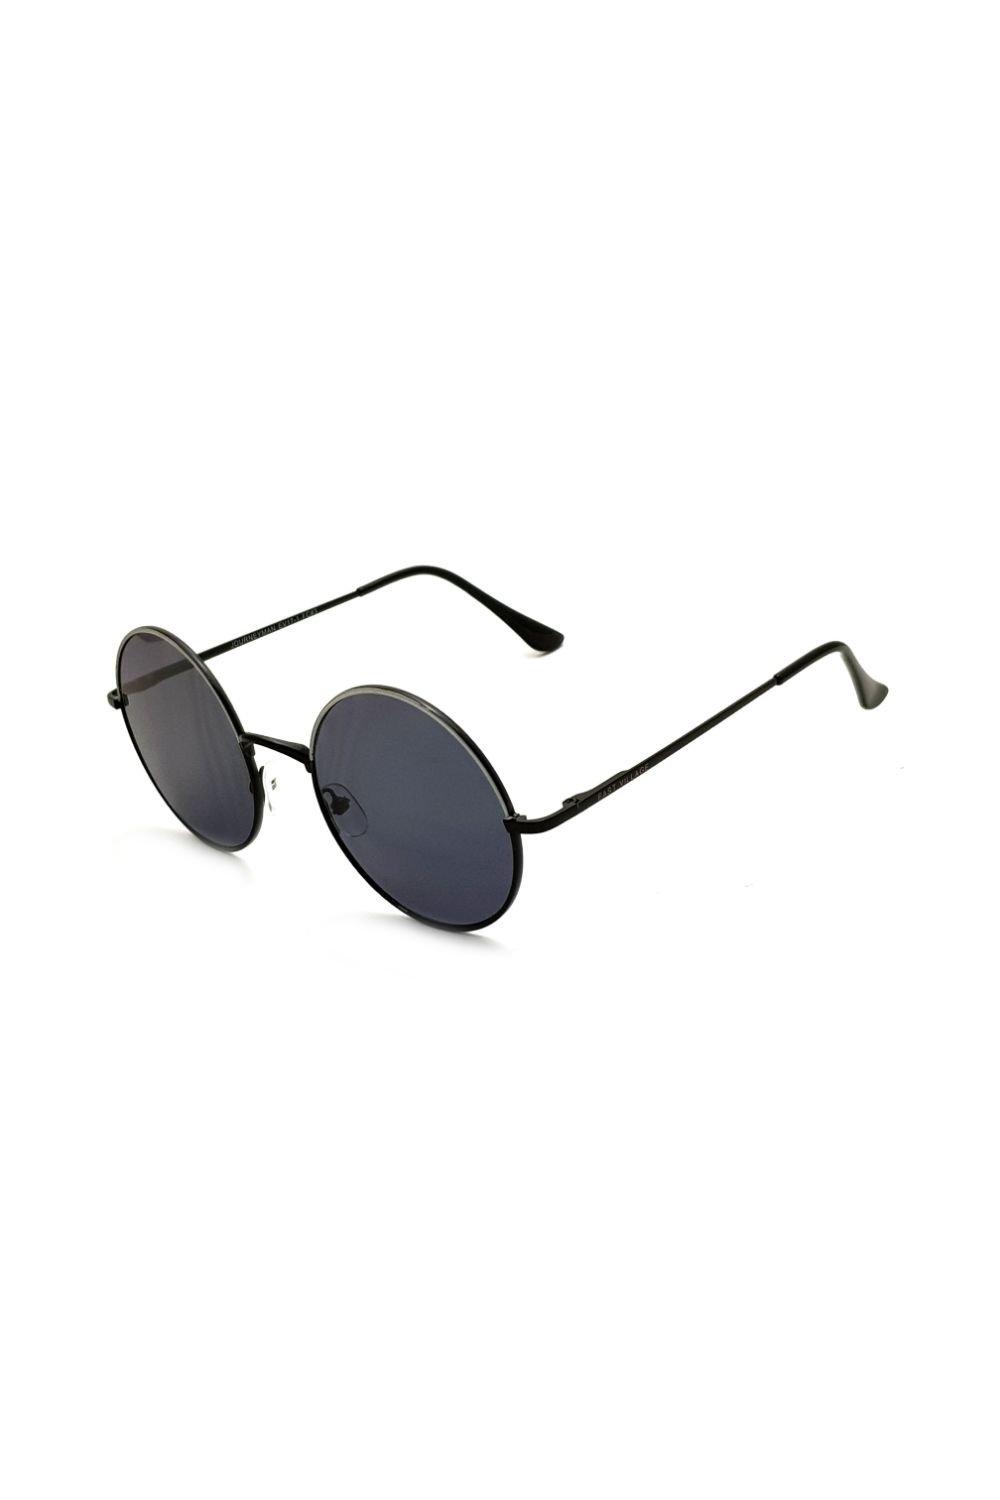 круглые солнцезащитные очки freeman east village синий Круглые солнцезащитные очки Journeyman East Village, черный